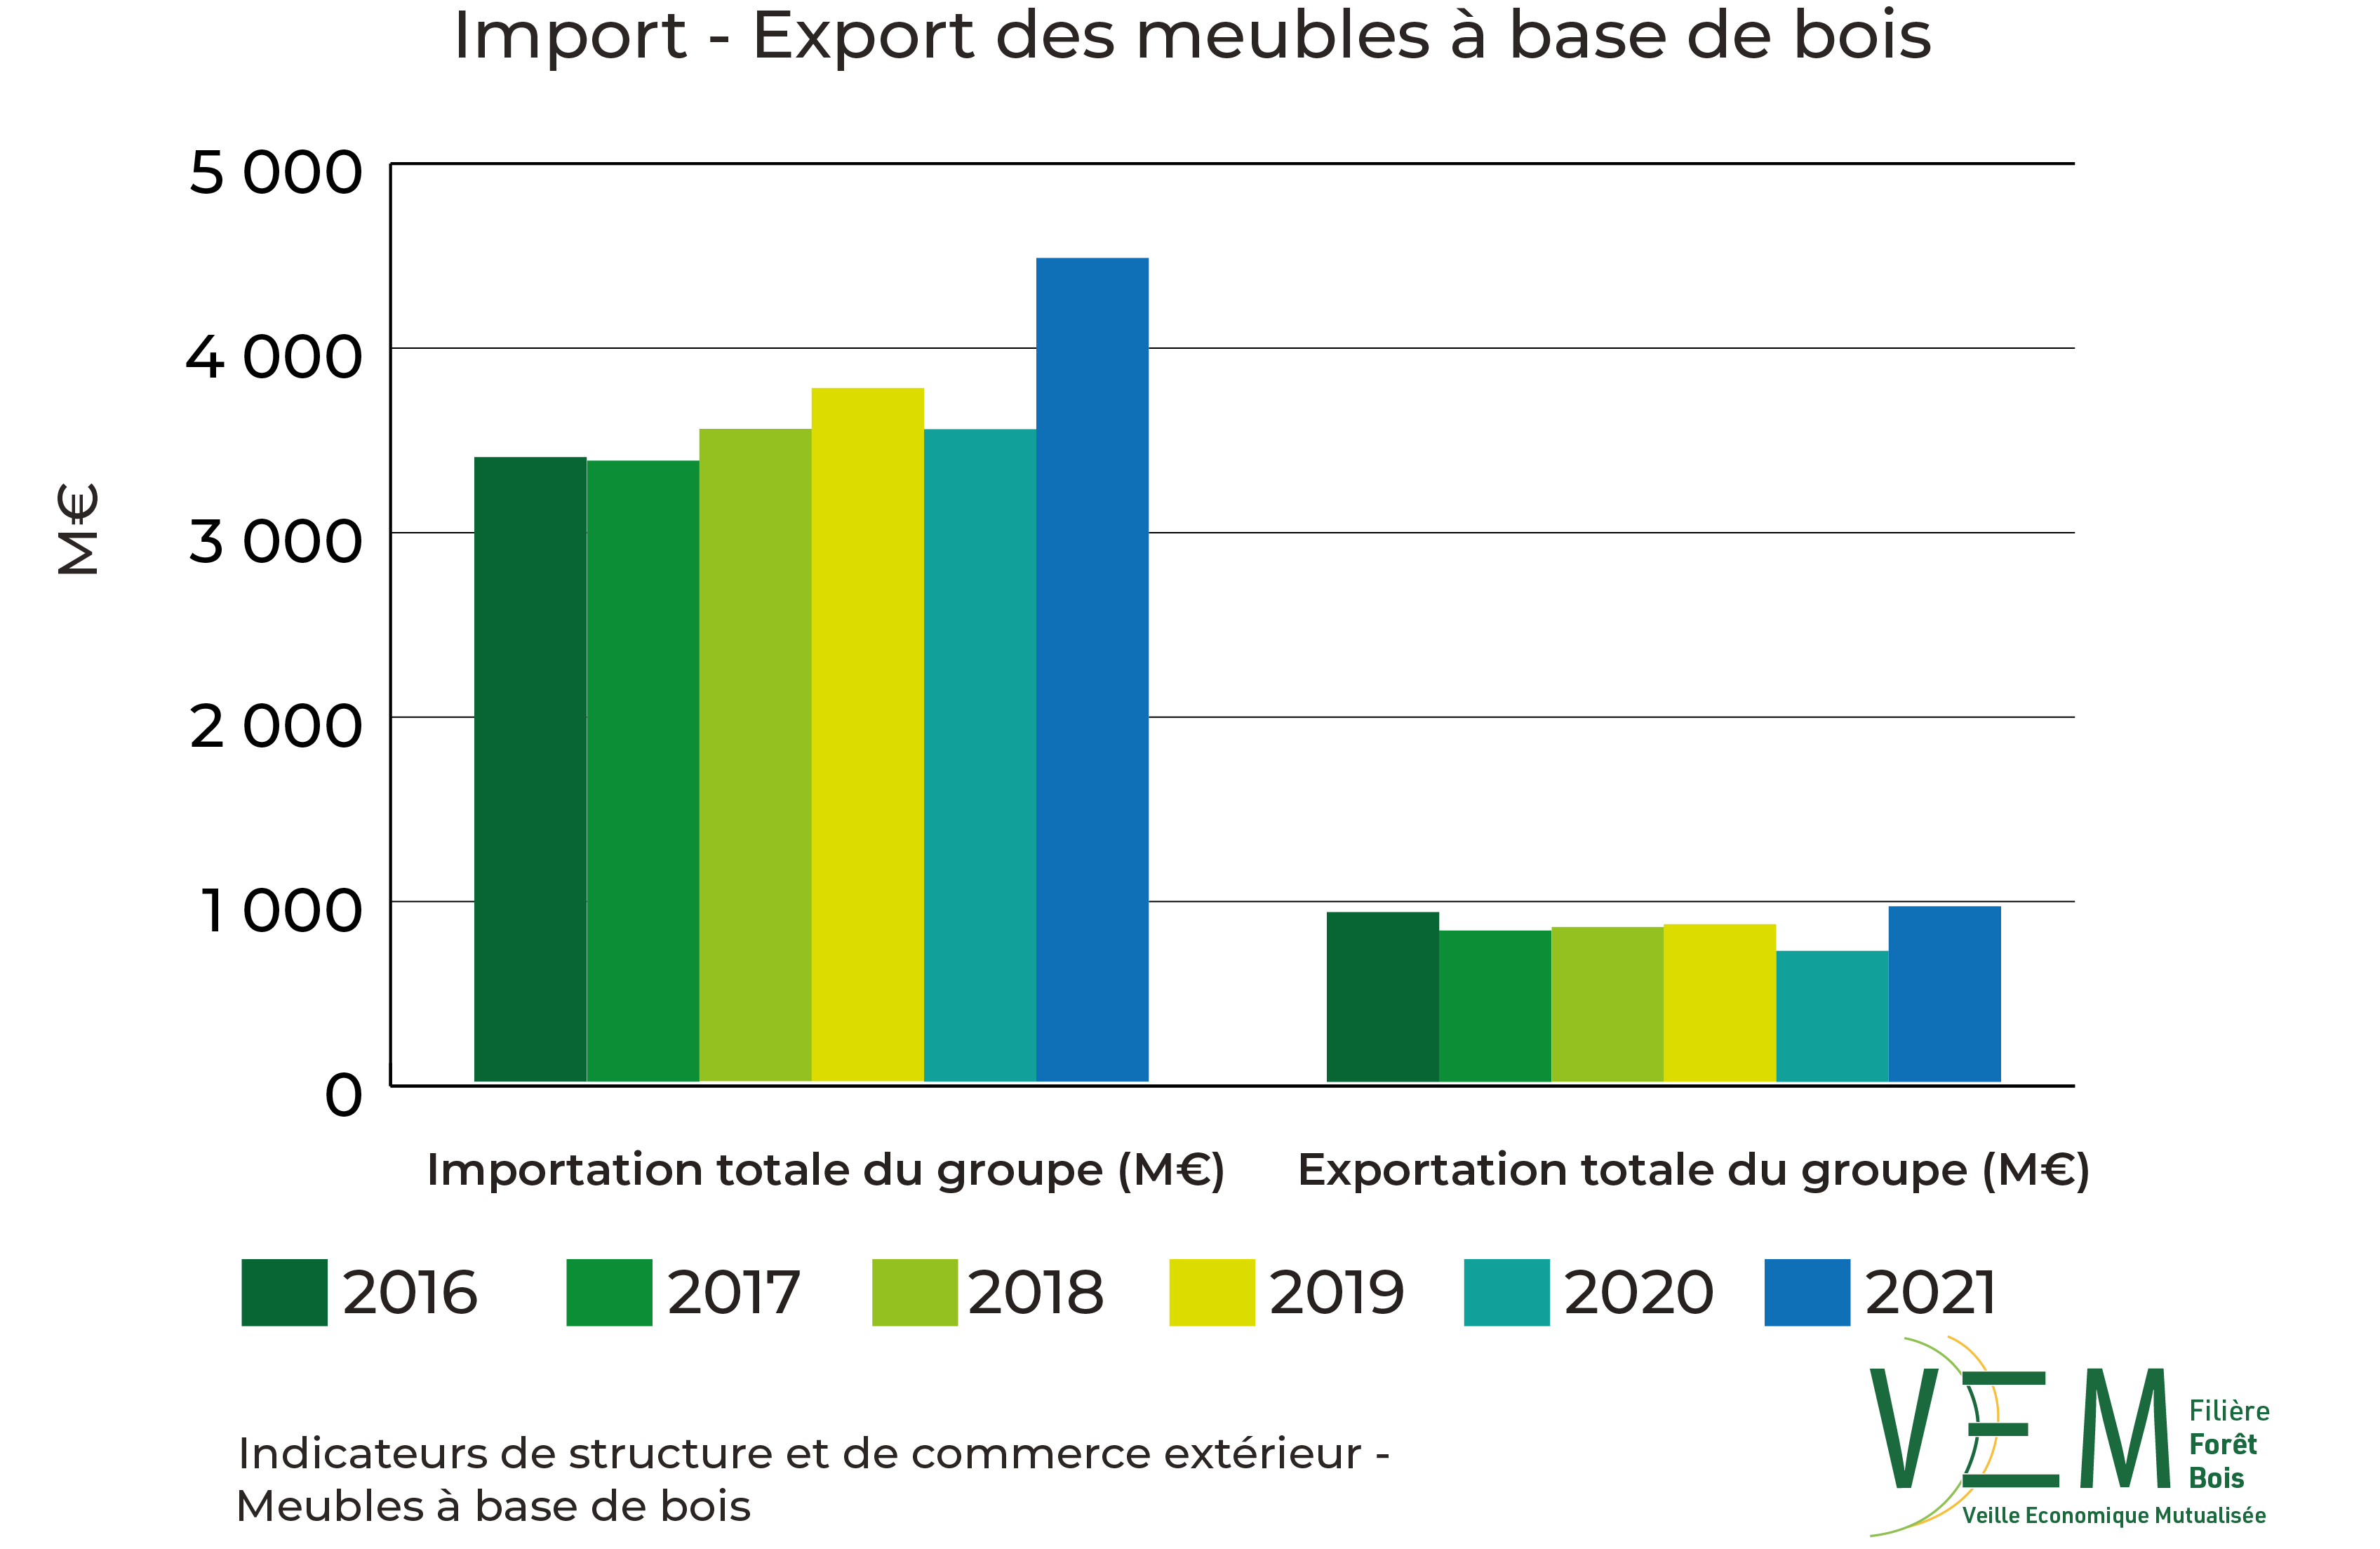 2023 ISCE Import export meubles a base de boisOK